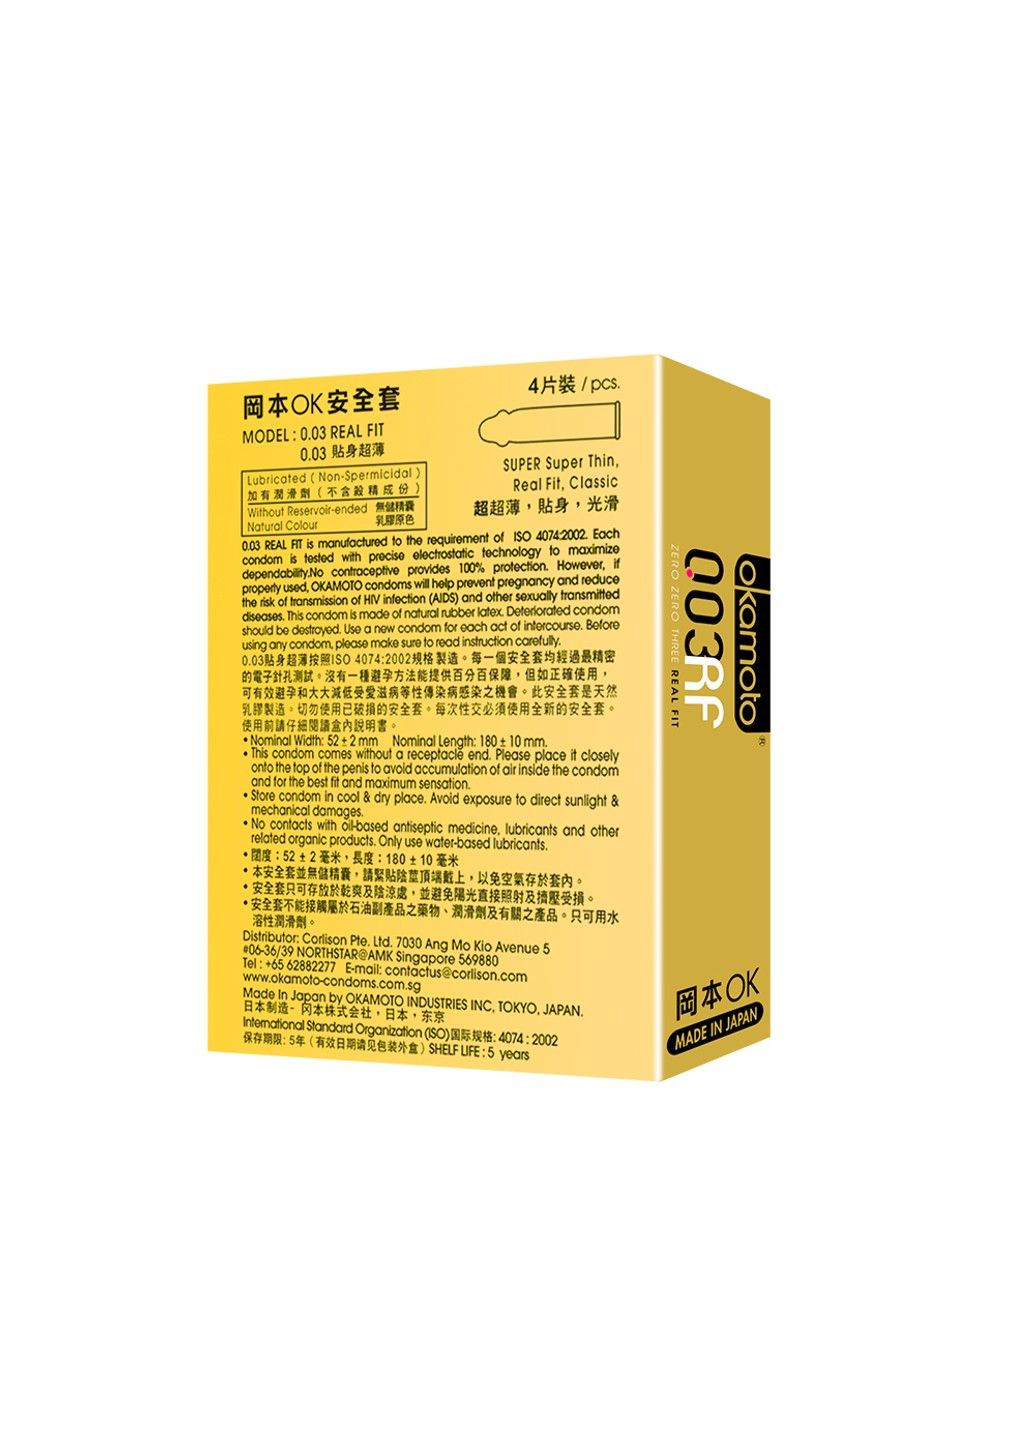 Презервативы латексные ультратонкие золото 0,03 мм (в упаковке 3 шт) Muaisi (290699195)